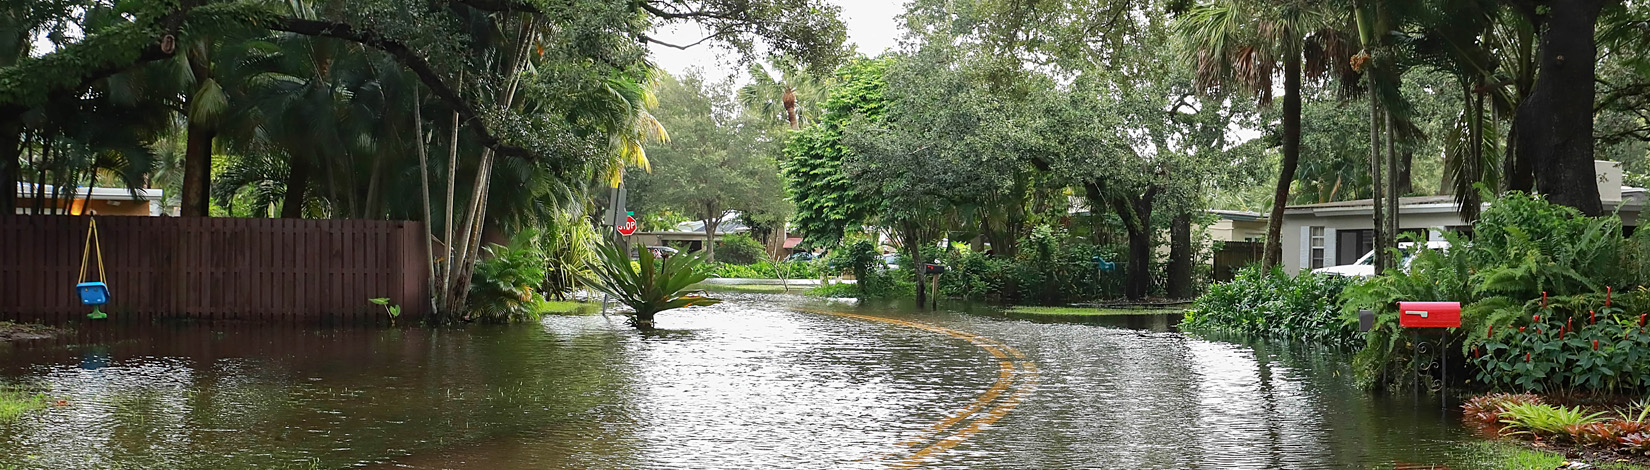 Flooded Florida neighborhood street